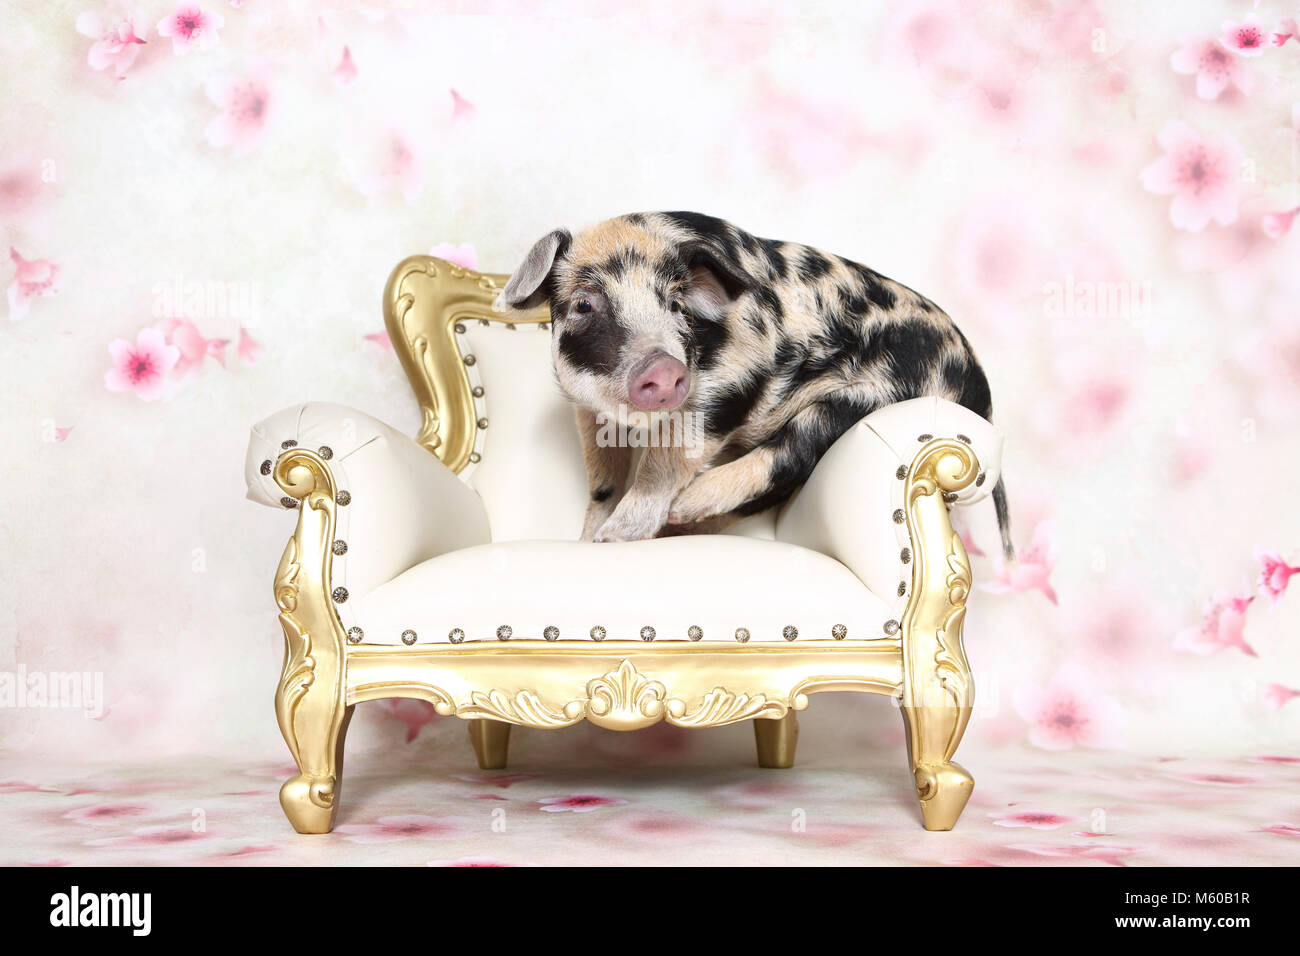 Hausschwein, Turopolje x?. Ferkel (4 Wochen alt) auf einem antiken Sessel. Studio Bild gegen einen weißen Hintergrund mit Blume drucken gesehen. Deutschland Stockfoto